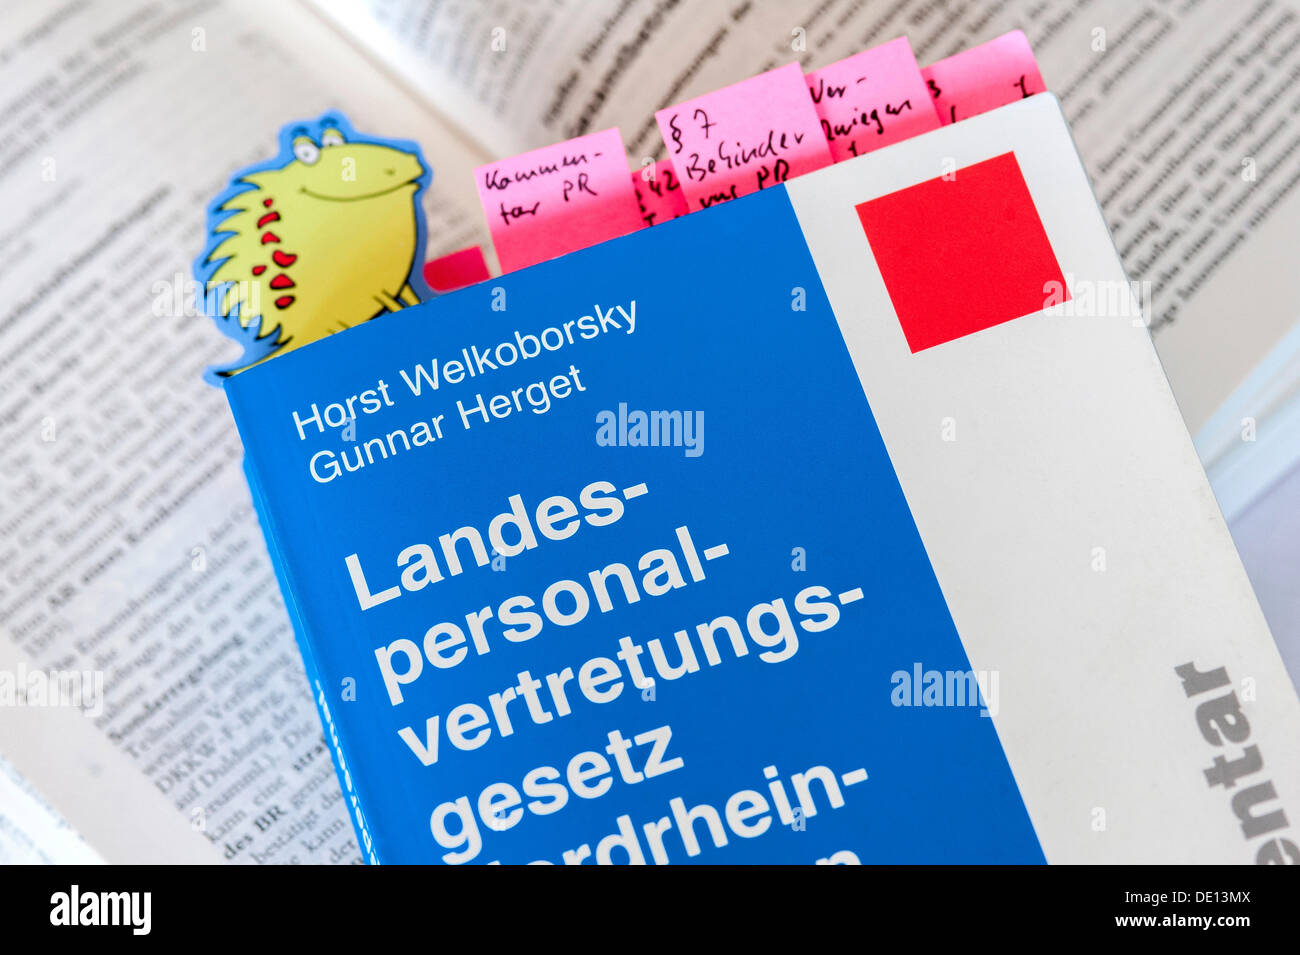 Livre 'Landespersonalvertretungsgesetz', l'allemand pour "le droit de représentation du personnel", le séminaire des conseillers du personnel Banque D'Images